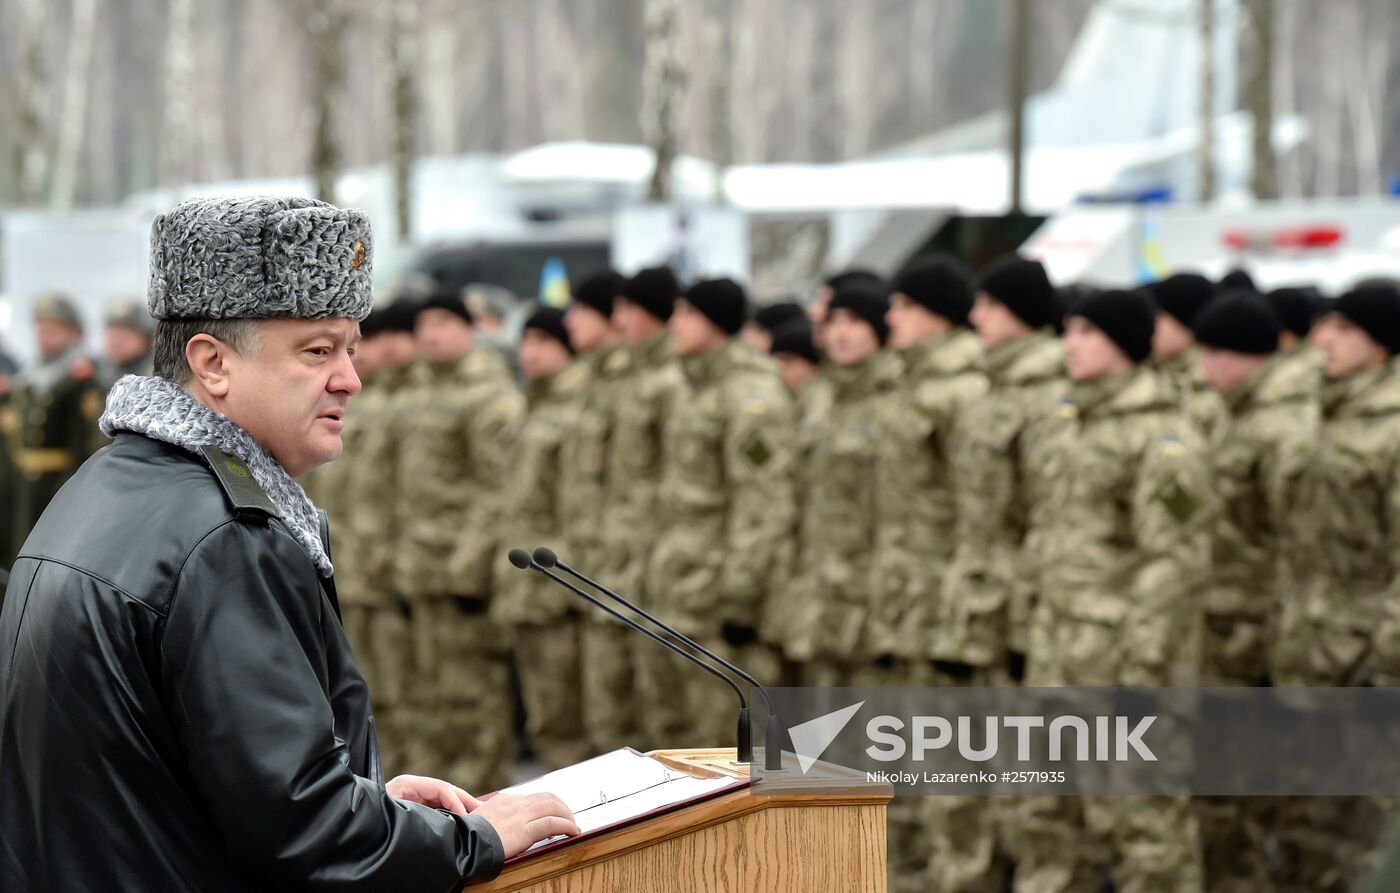 Ukraine's President Poroshenko speaks at National Guard Training Center